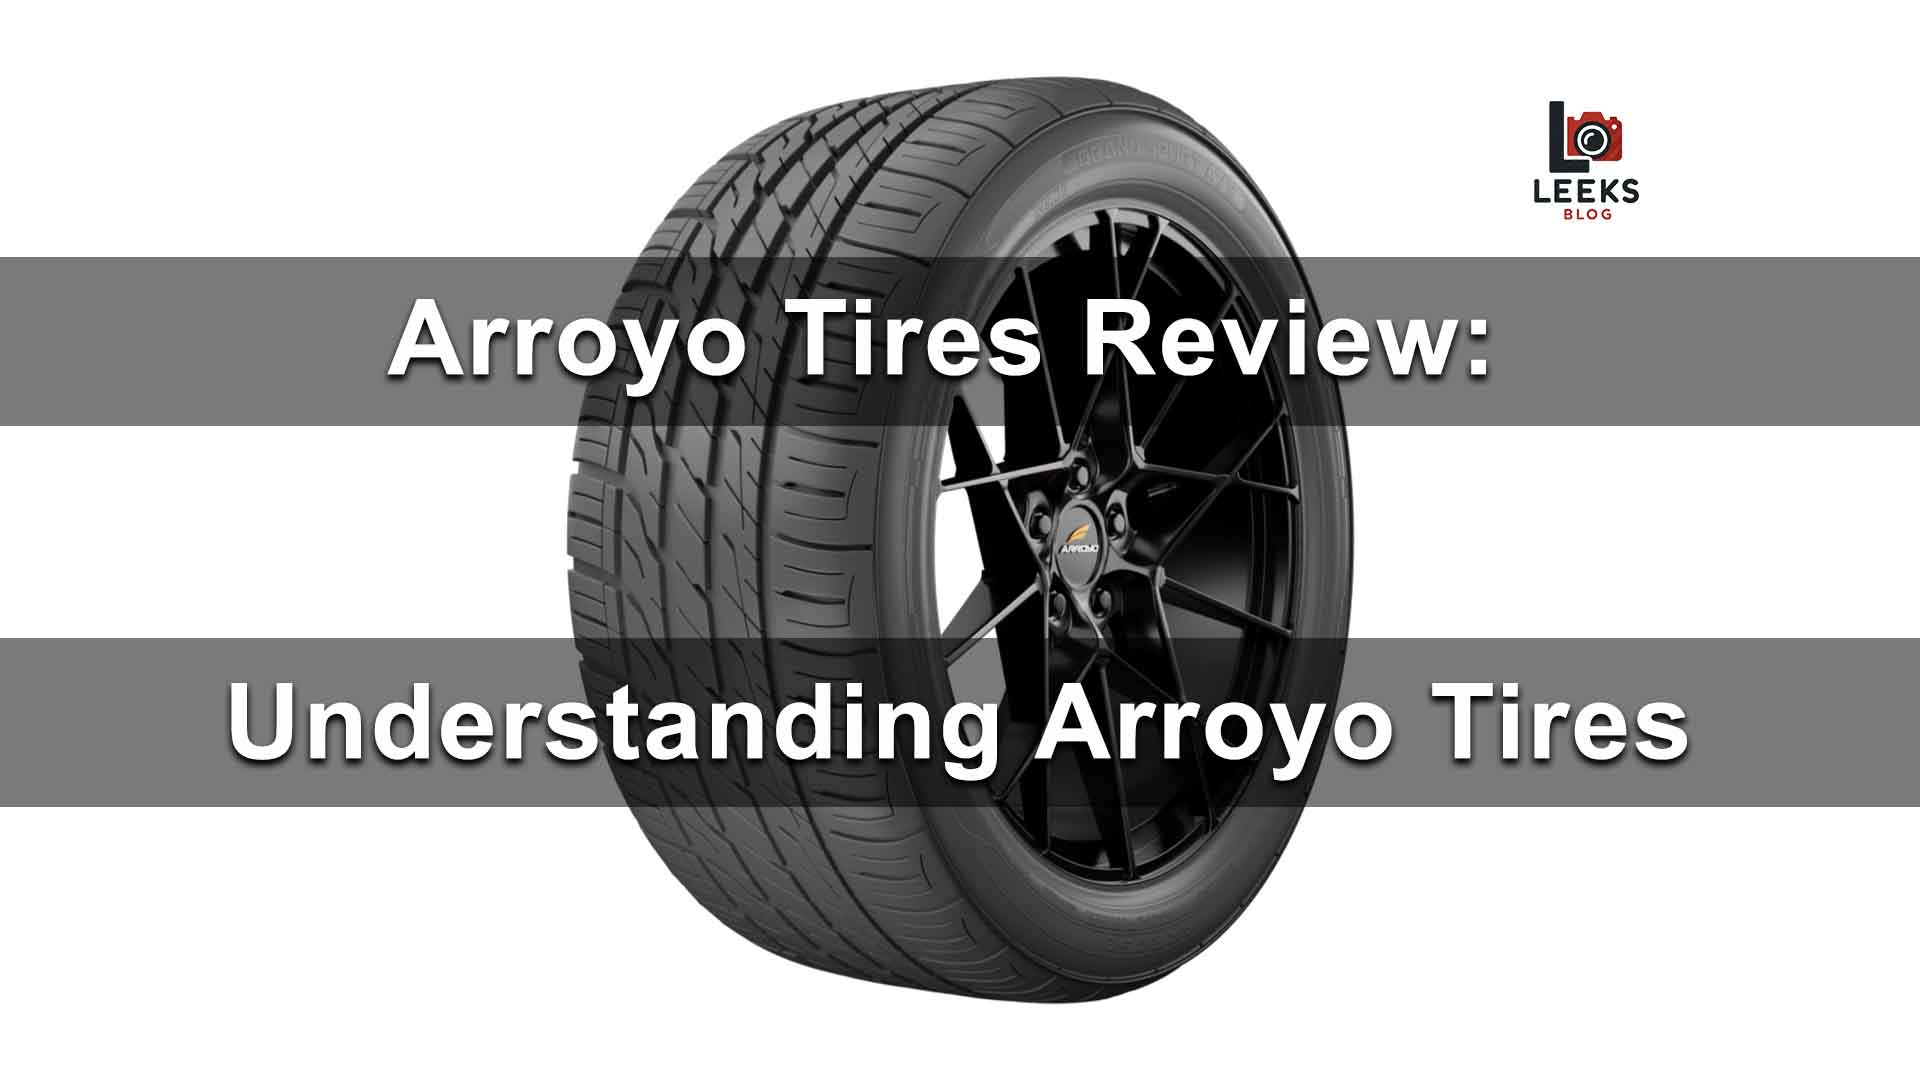 Arroyo Tires Review: Understanding Arroyo Tires